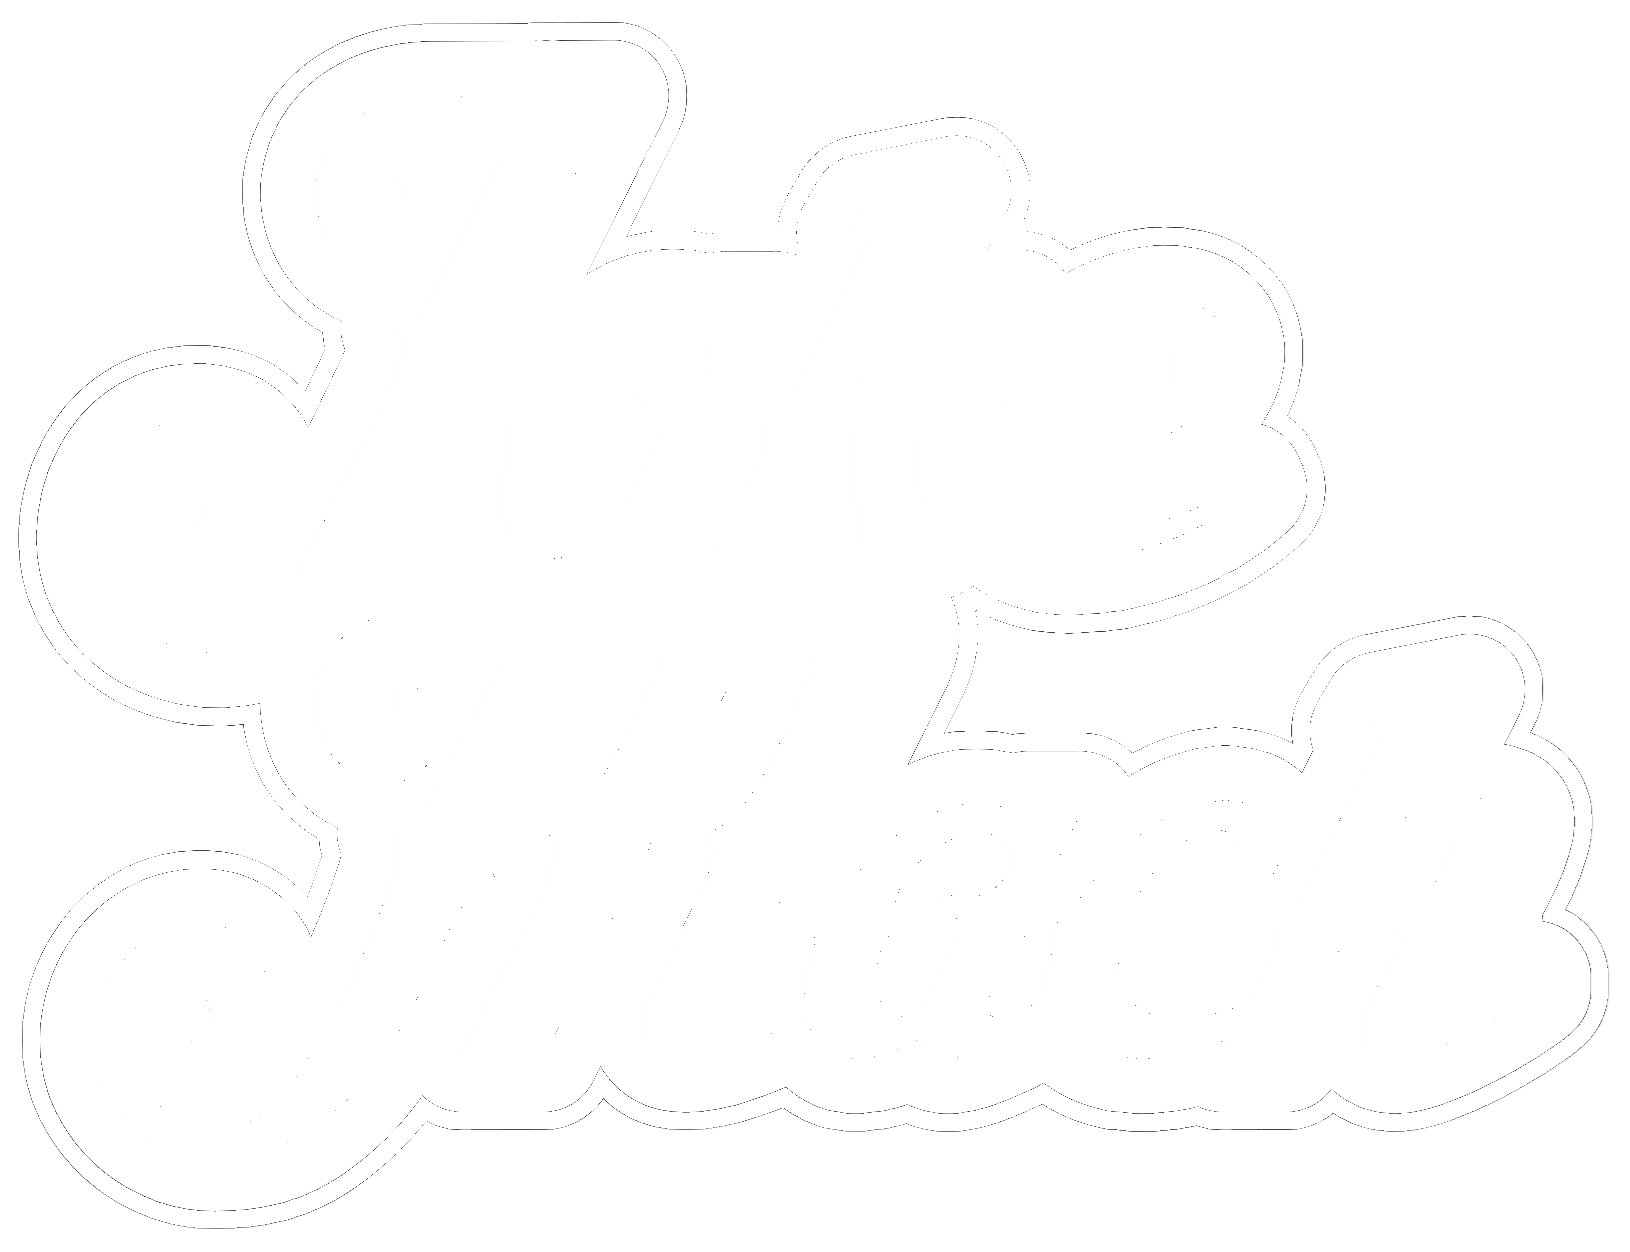 Jake Mach